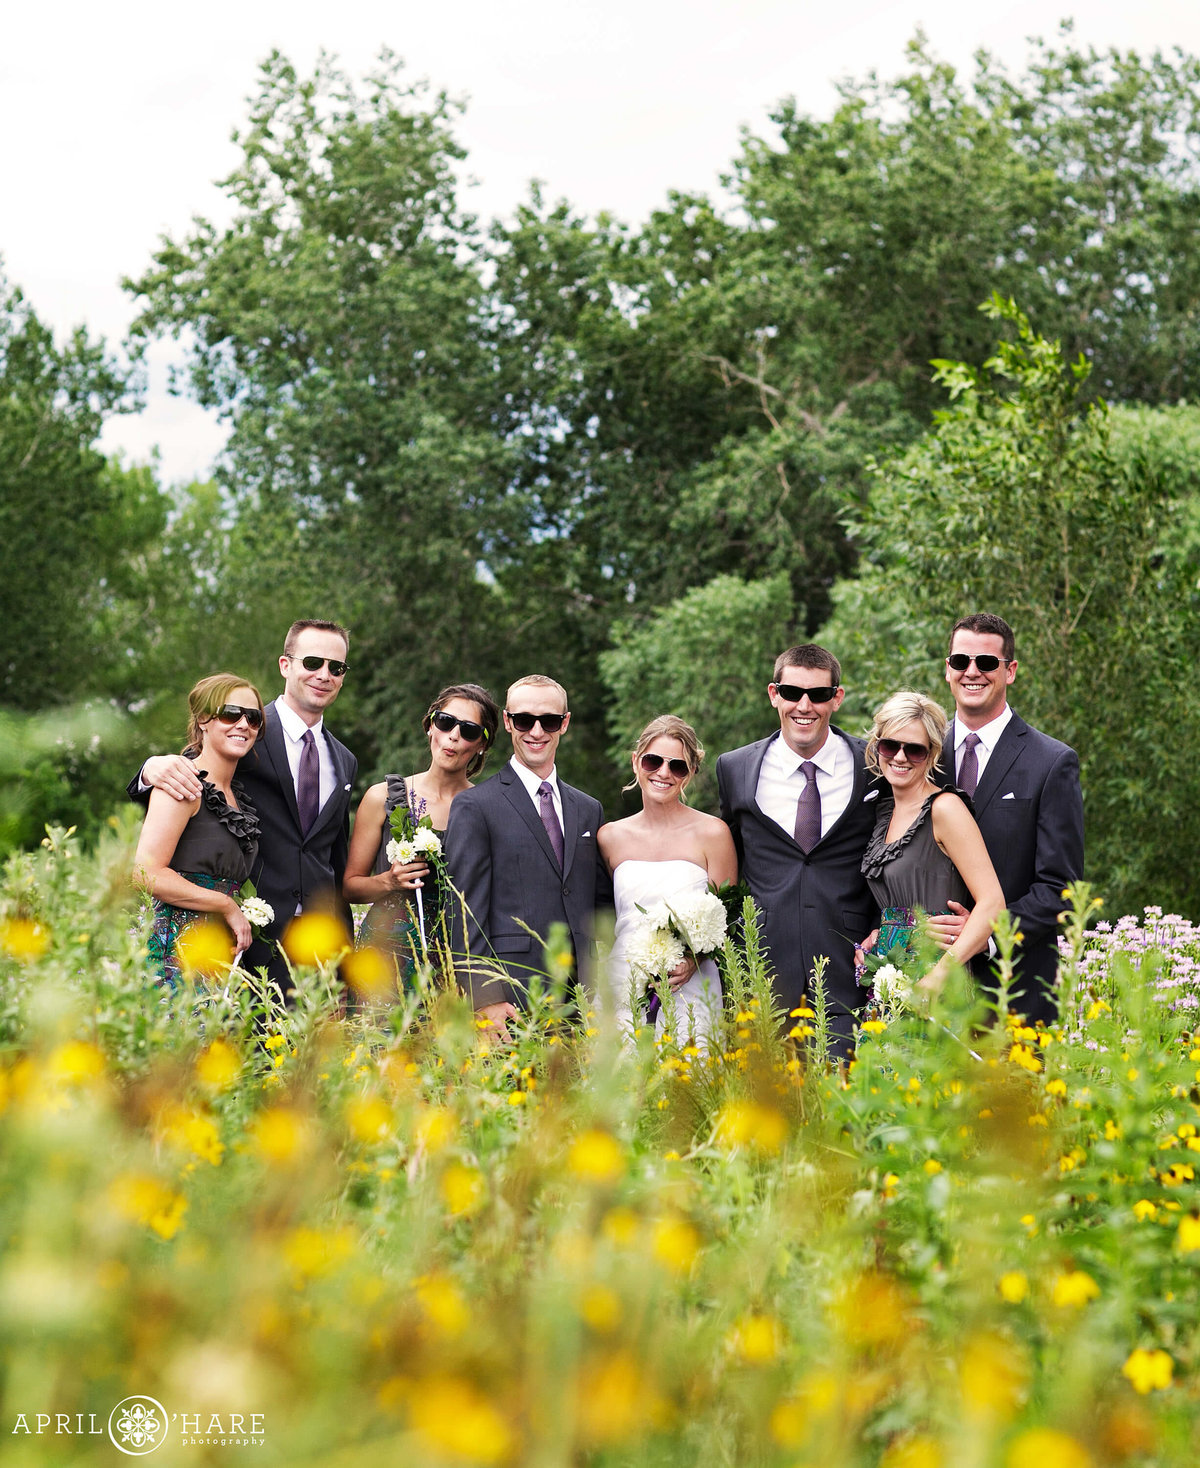 Fun Wedding Party Photography in Denver Colorado Chatfield Farms